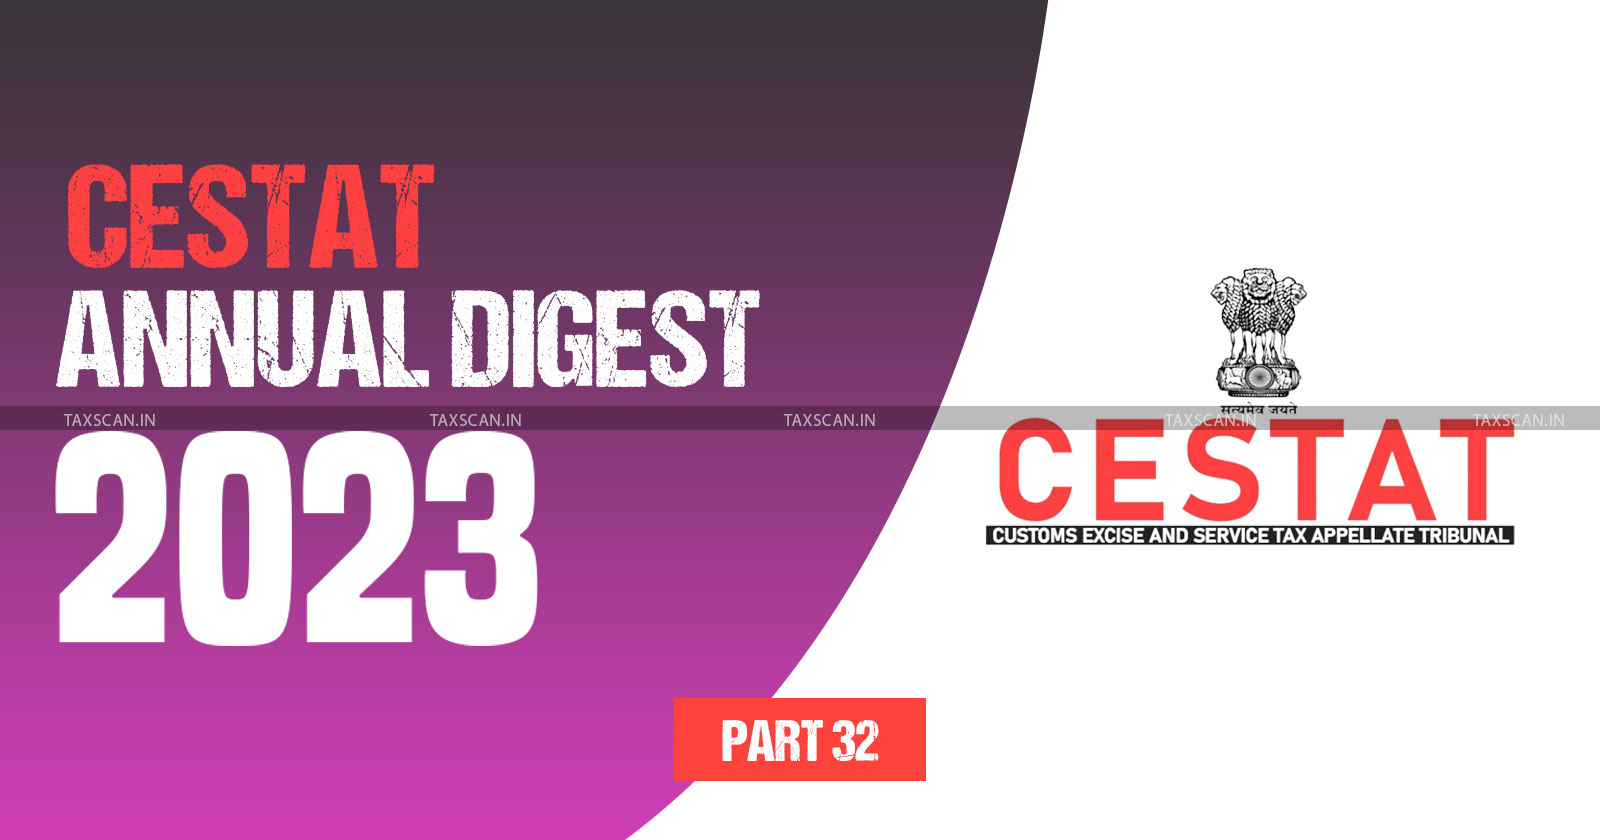 Annual Digest 2023 - CESTAT Annual Digest 2023 - cestat - part 32